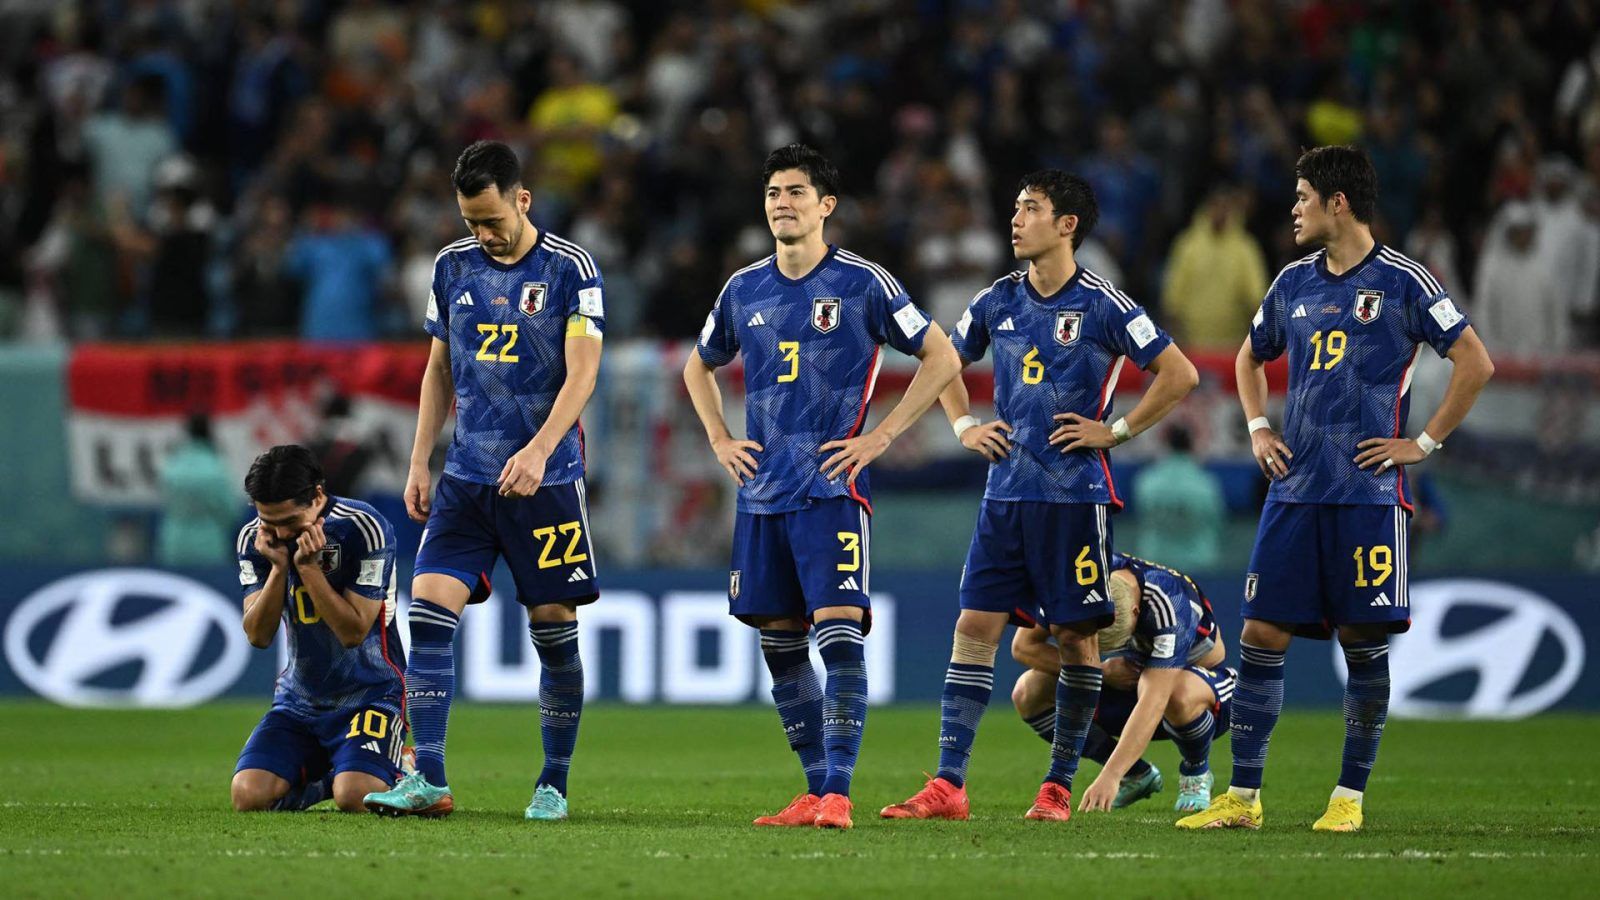 ทีมชาติญี่ปุ่น ใน ฟุตบอลโลก 2022 ที่พัฒนามาจากความพยายามและ Softpower